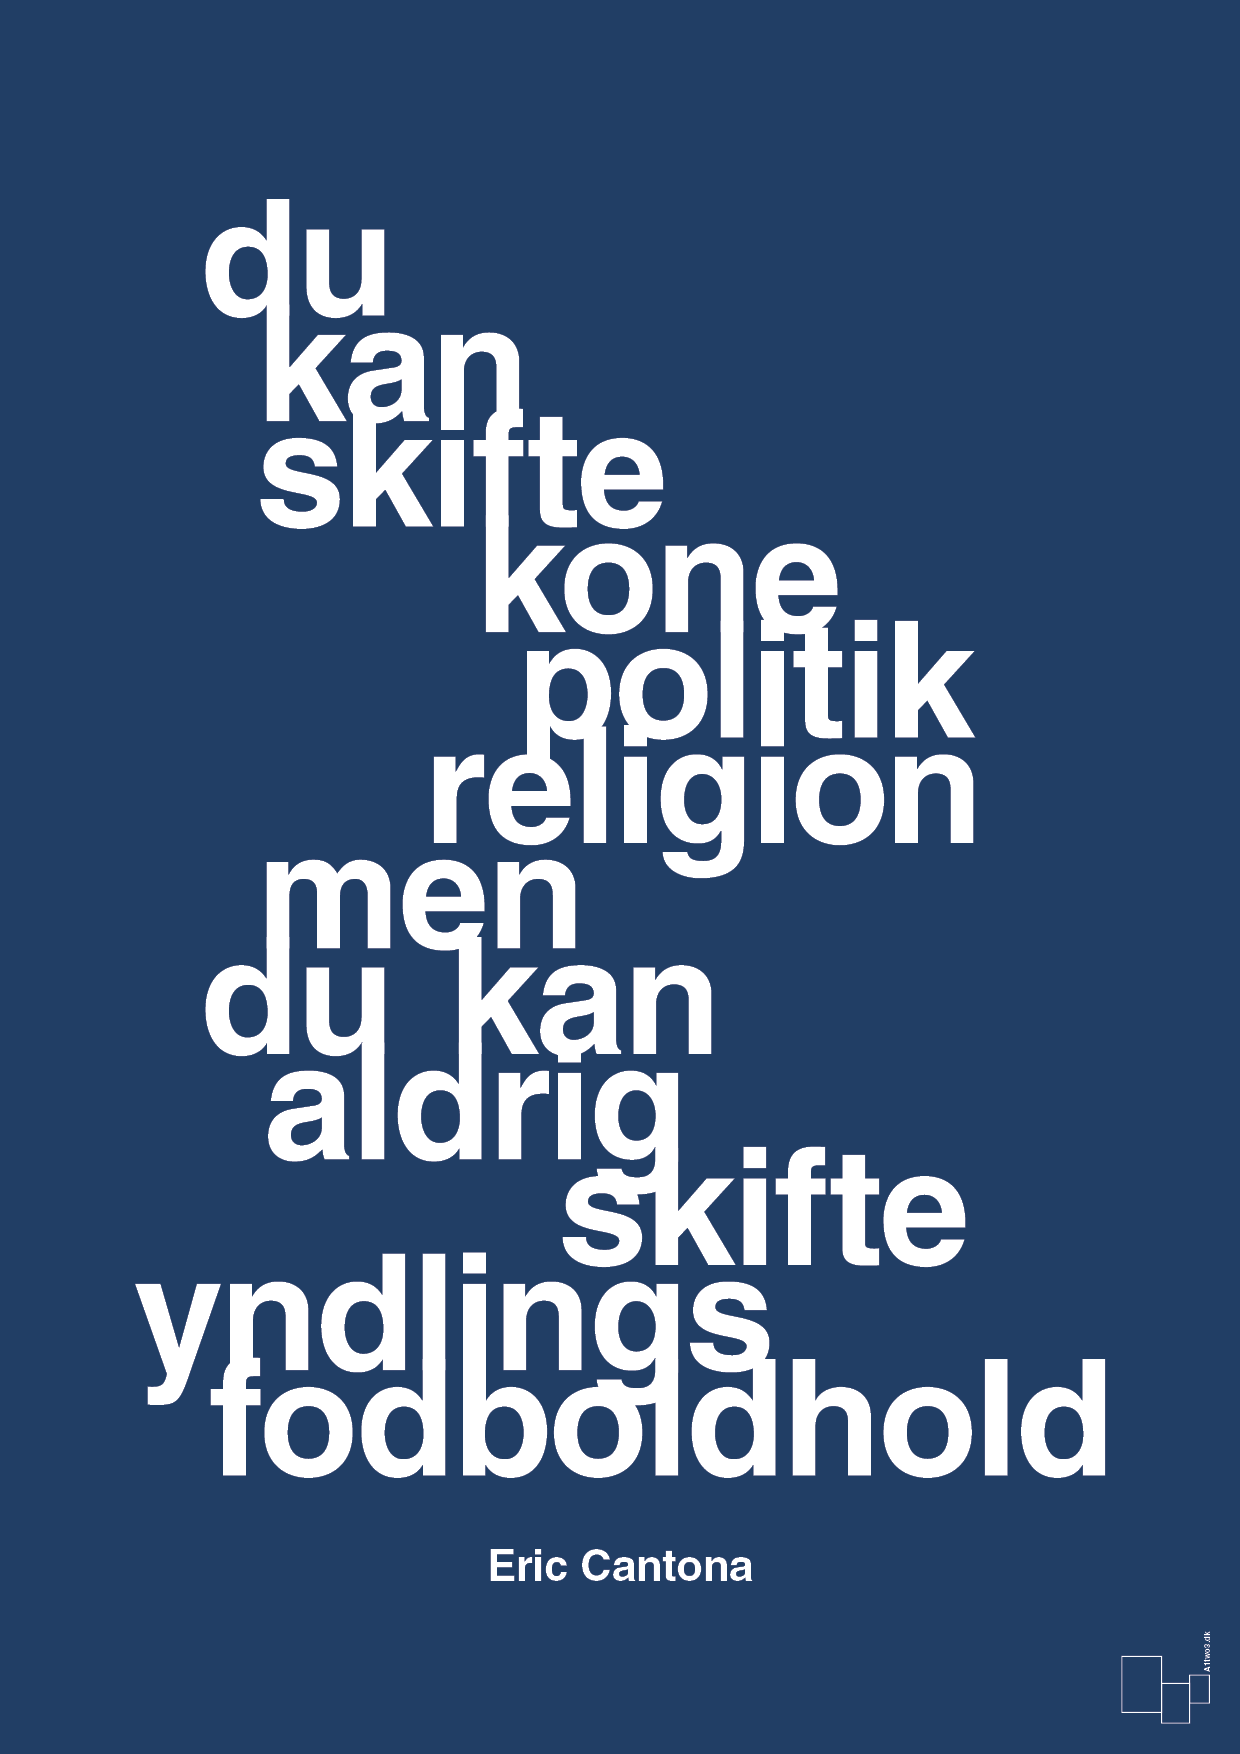 du kan skifte kone politik religion men du kan aldrig skifte yndlings-fodboldhold - Plakat med Citater i Lapis Blue